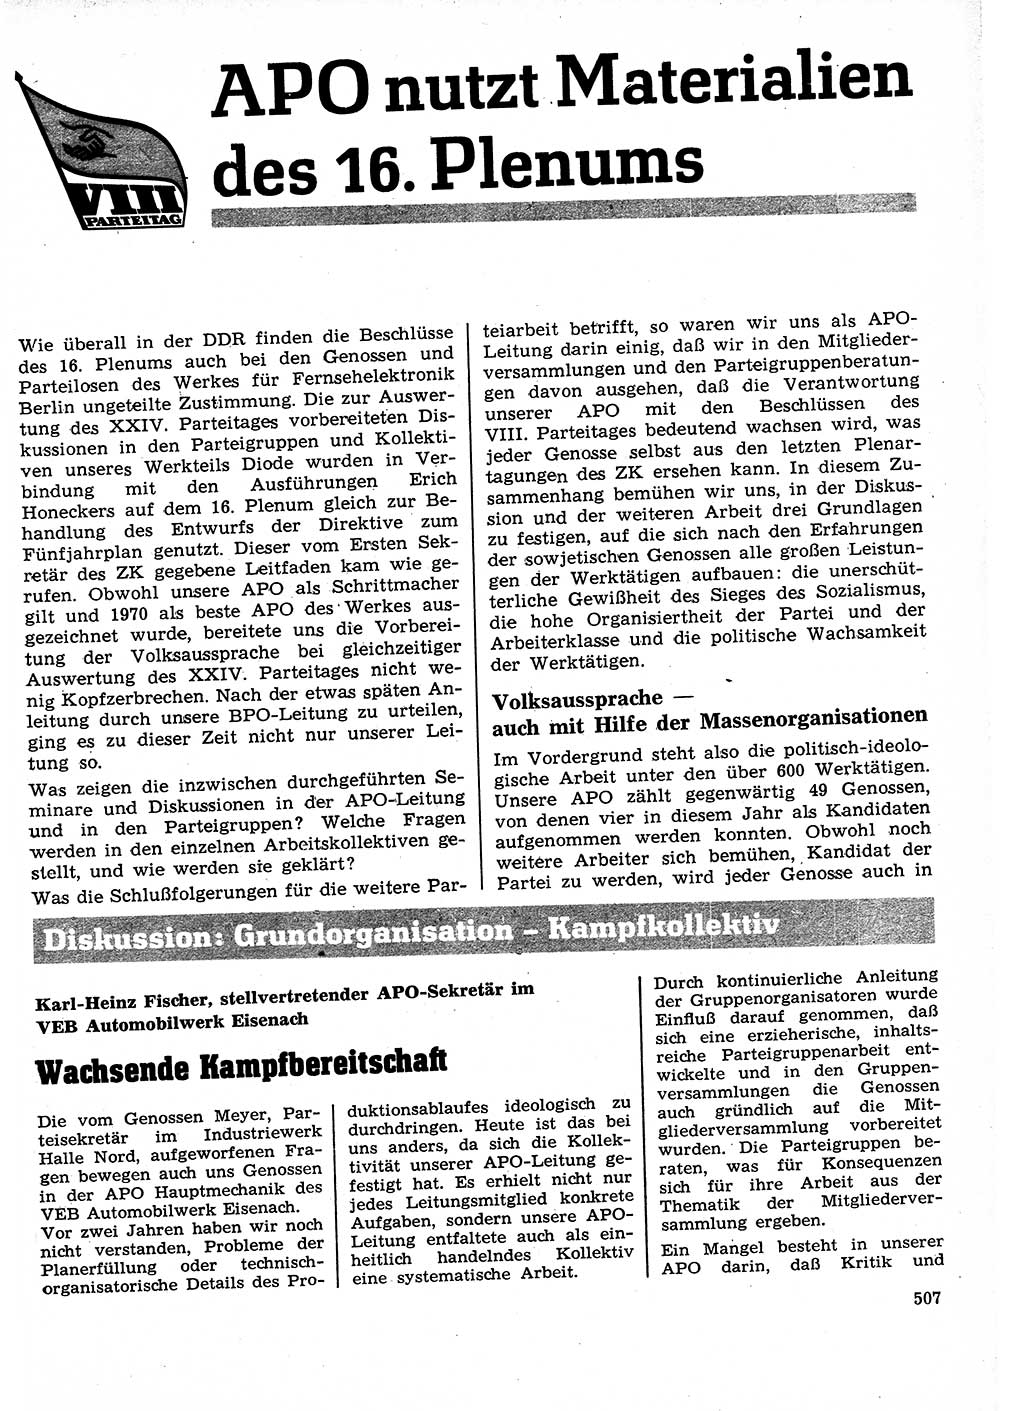 Neuer Weg (NW), Organ des Zentralkomitees (ZK) der SED (Sozialistische Einheitspartei Deutschlands) für Fragen des Parteilebens, 26. Jahrgang [Deutsche Demokratische Republik (DDR)] 1971, Seite 507 (NW ZK SED DDR 1971, S. 507)